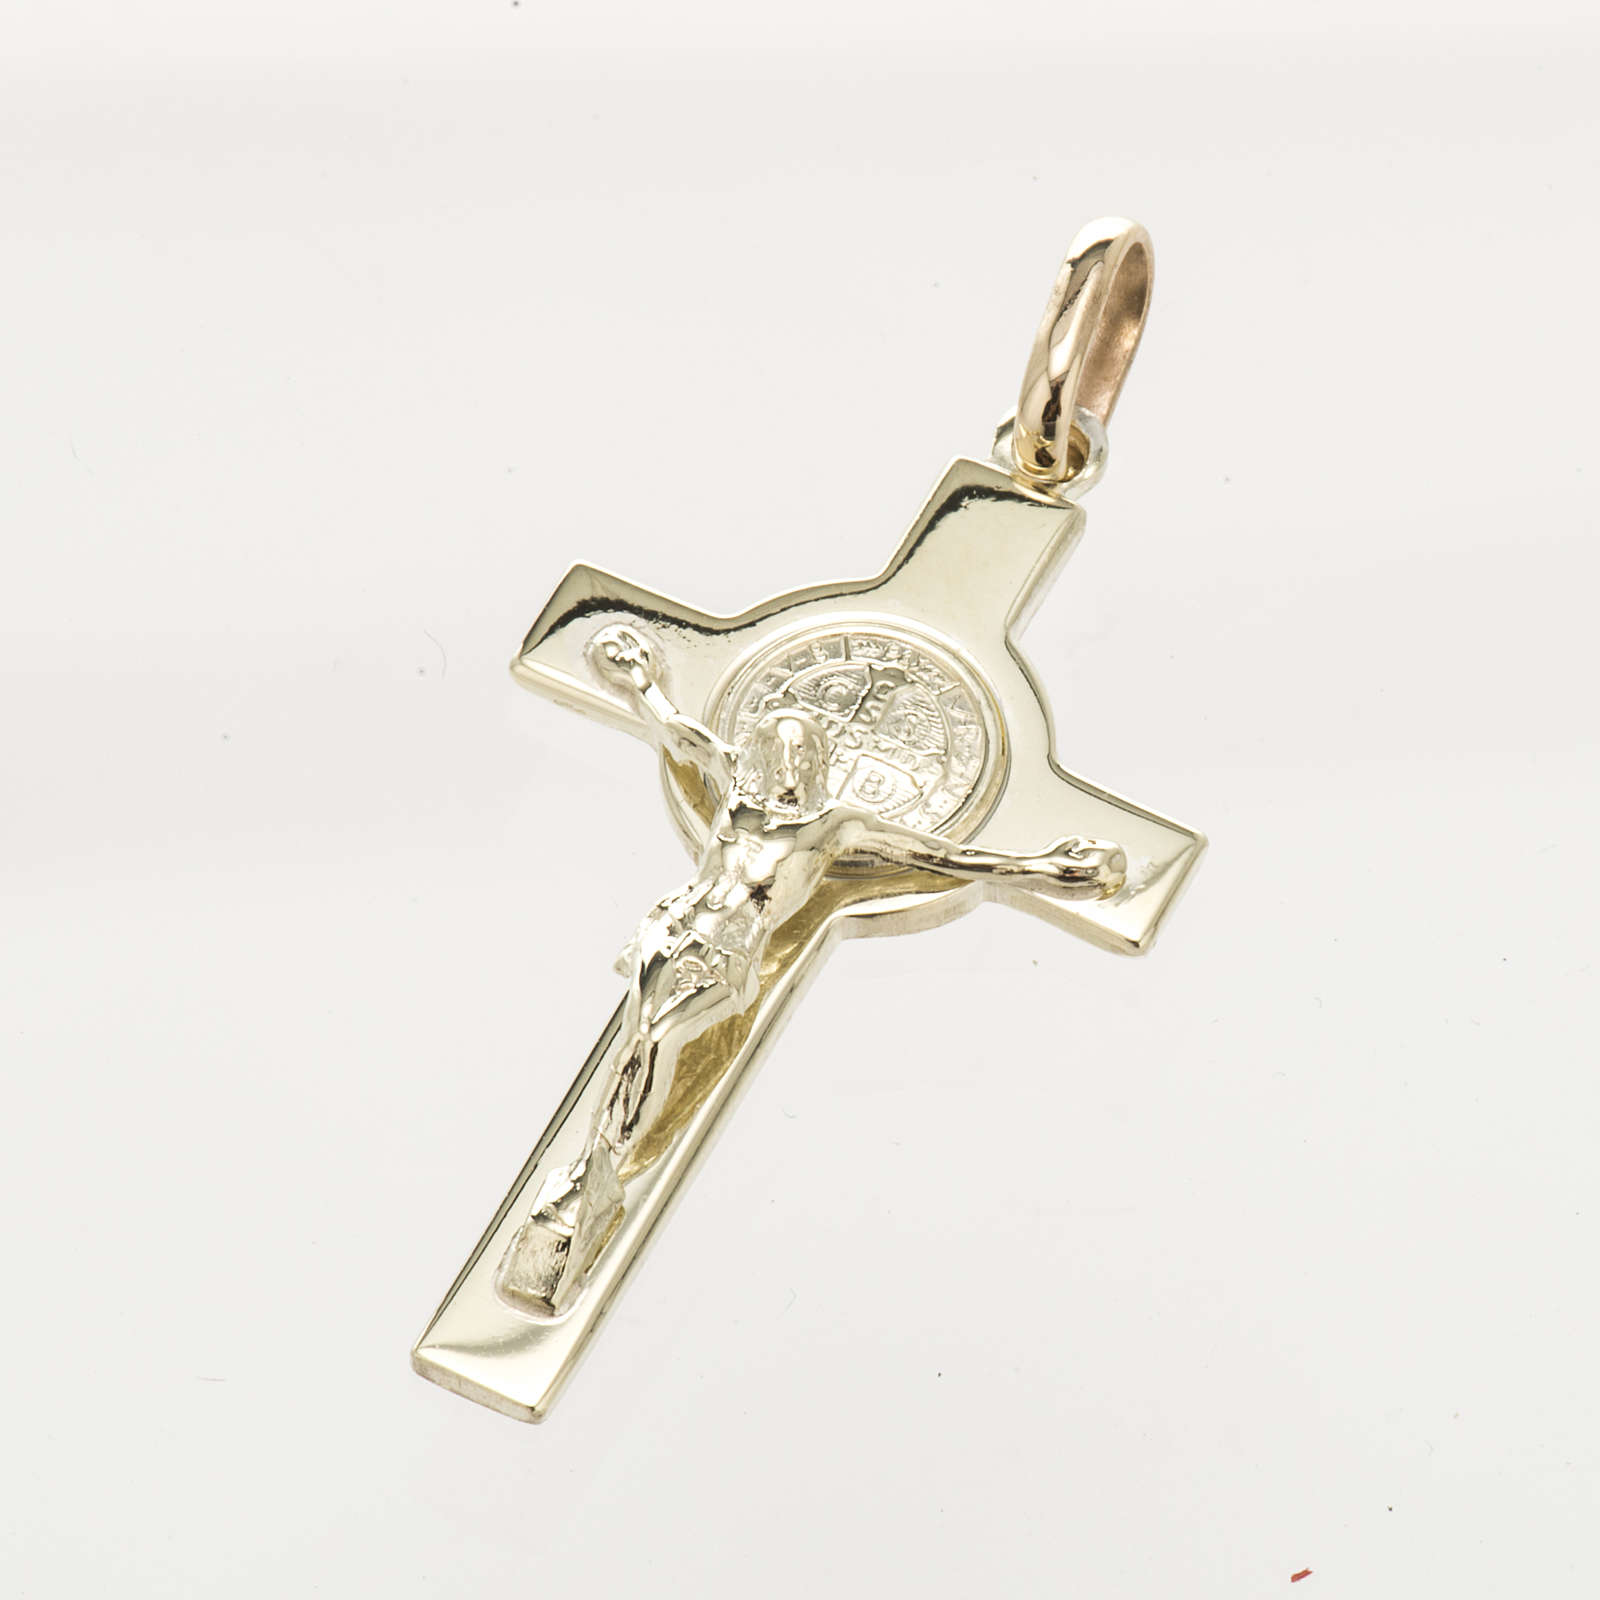 Pendentif croix de Saint Benoit or 14k